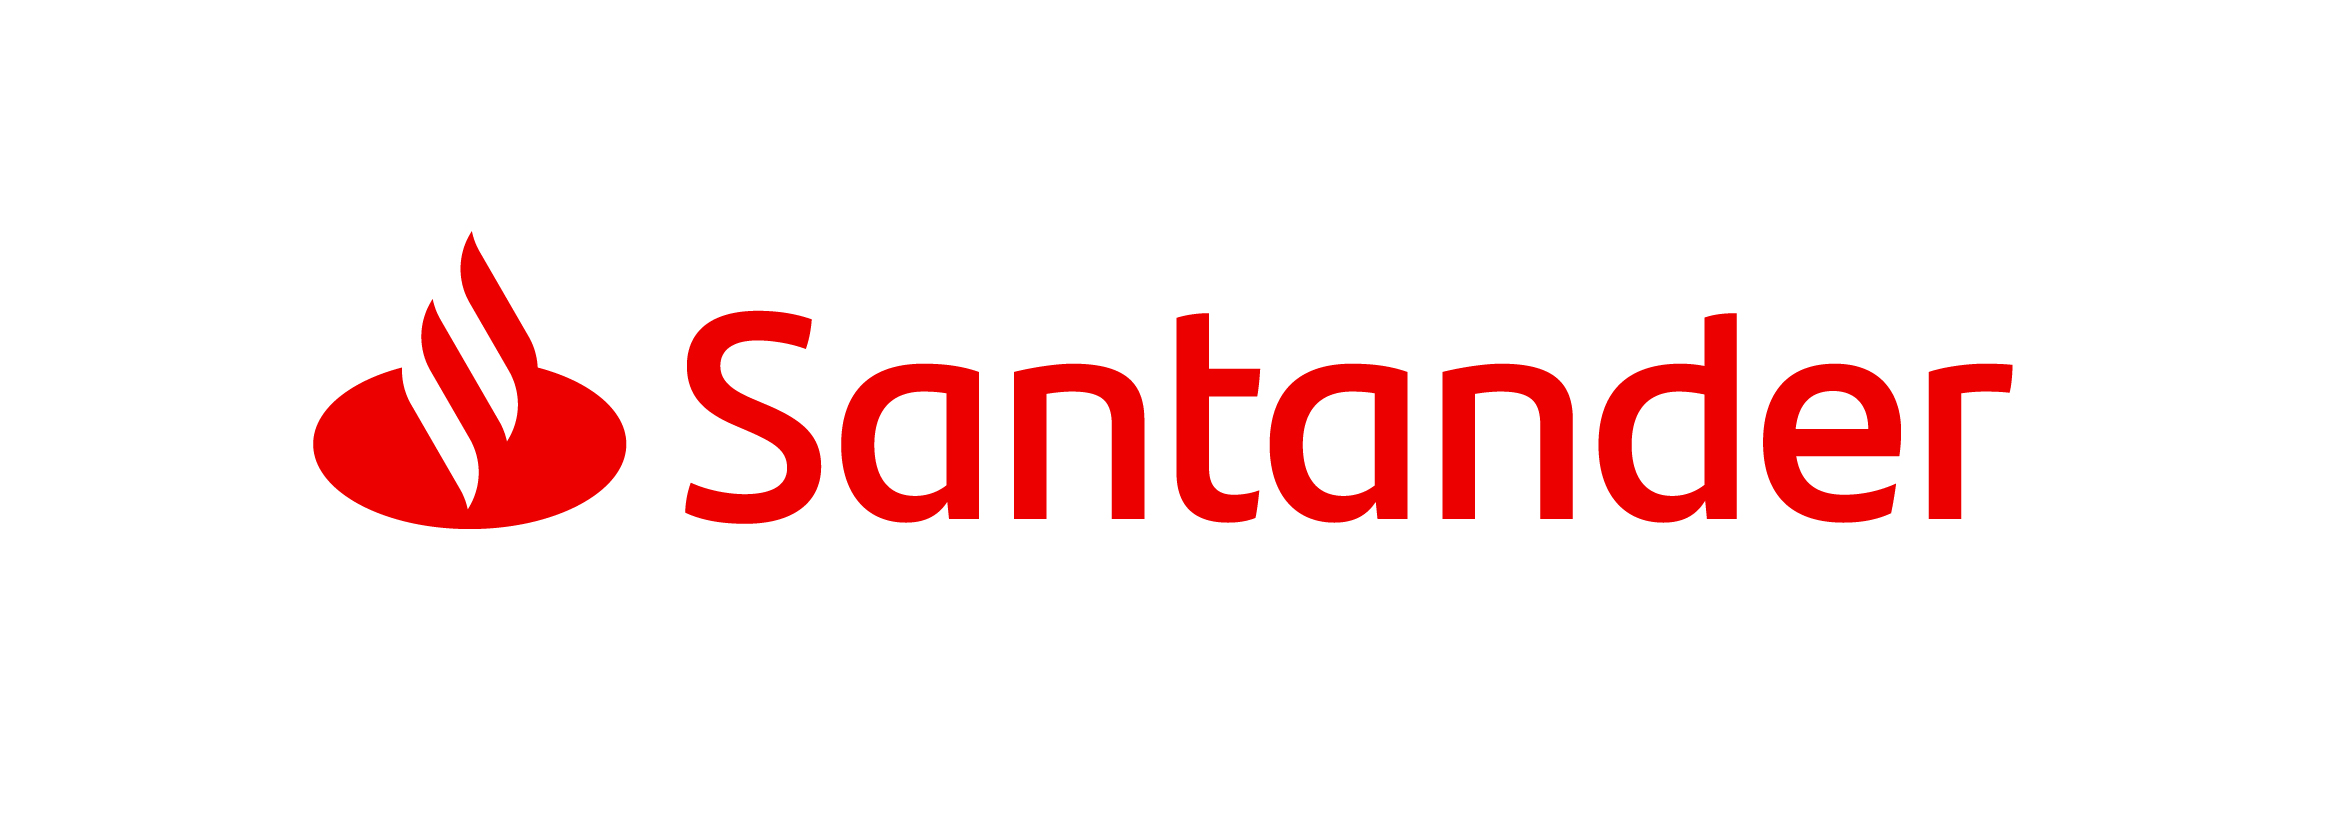 EY Pays Back £15m to Santander UK